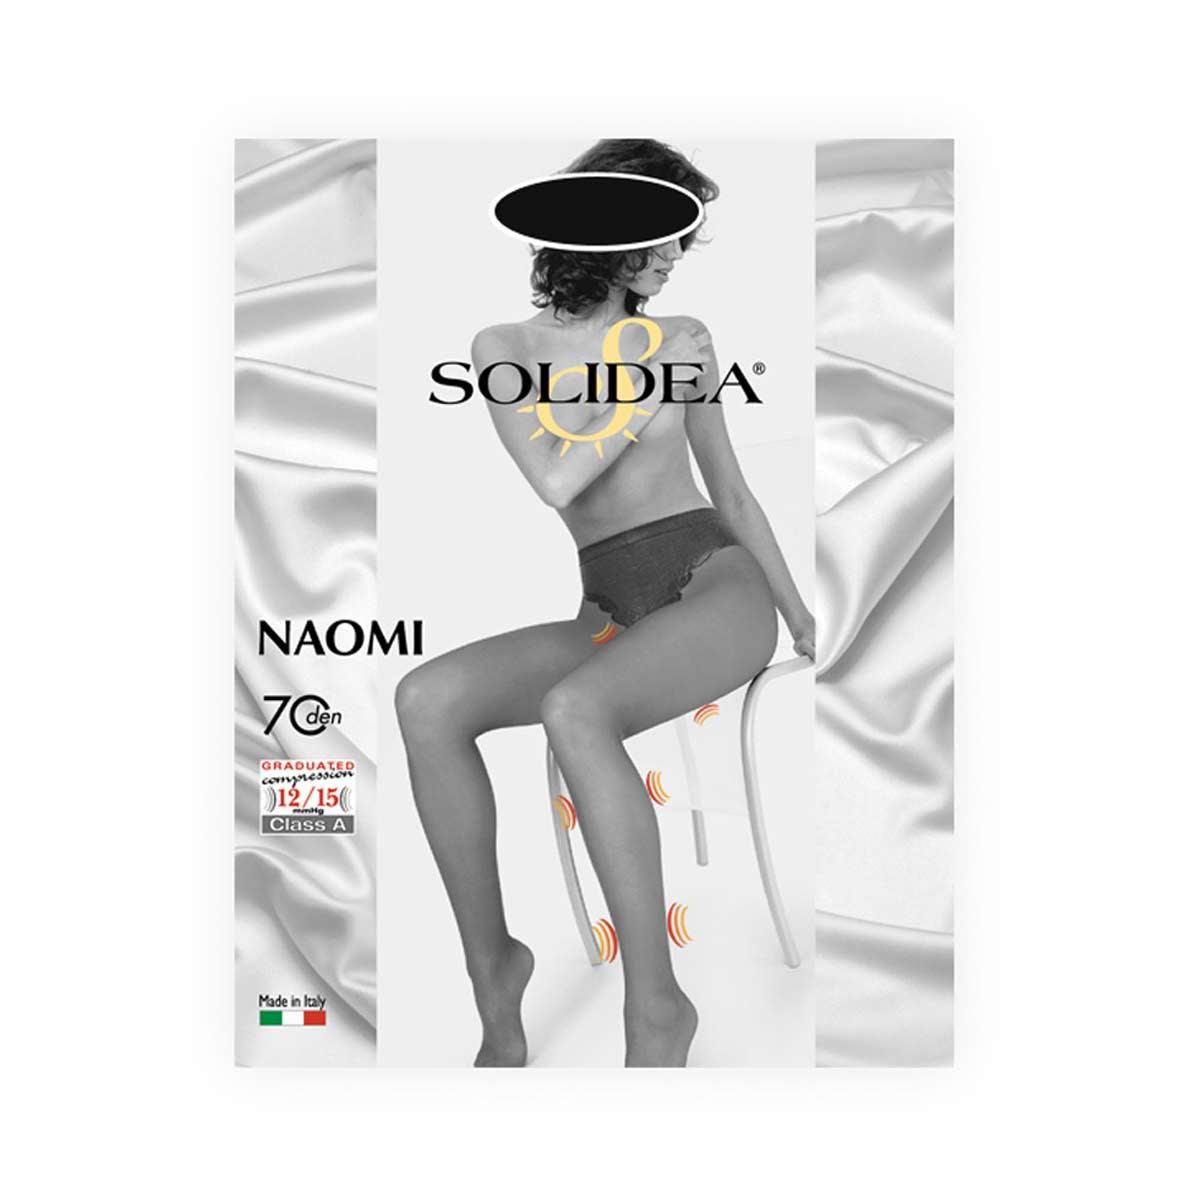 902246899 - Solidea Naomi 70 Collant Contenitivo Nero taglia 1 - 4705896_2.jpg